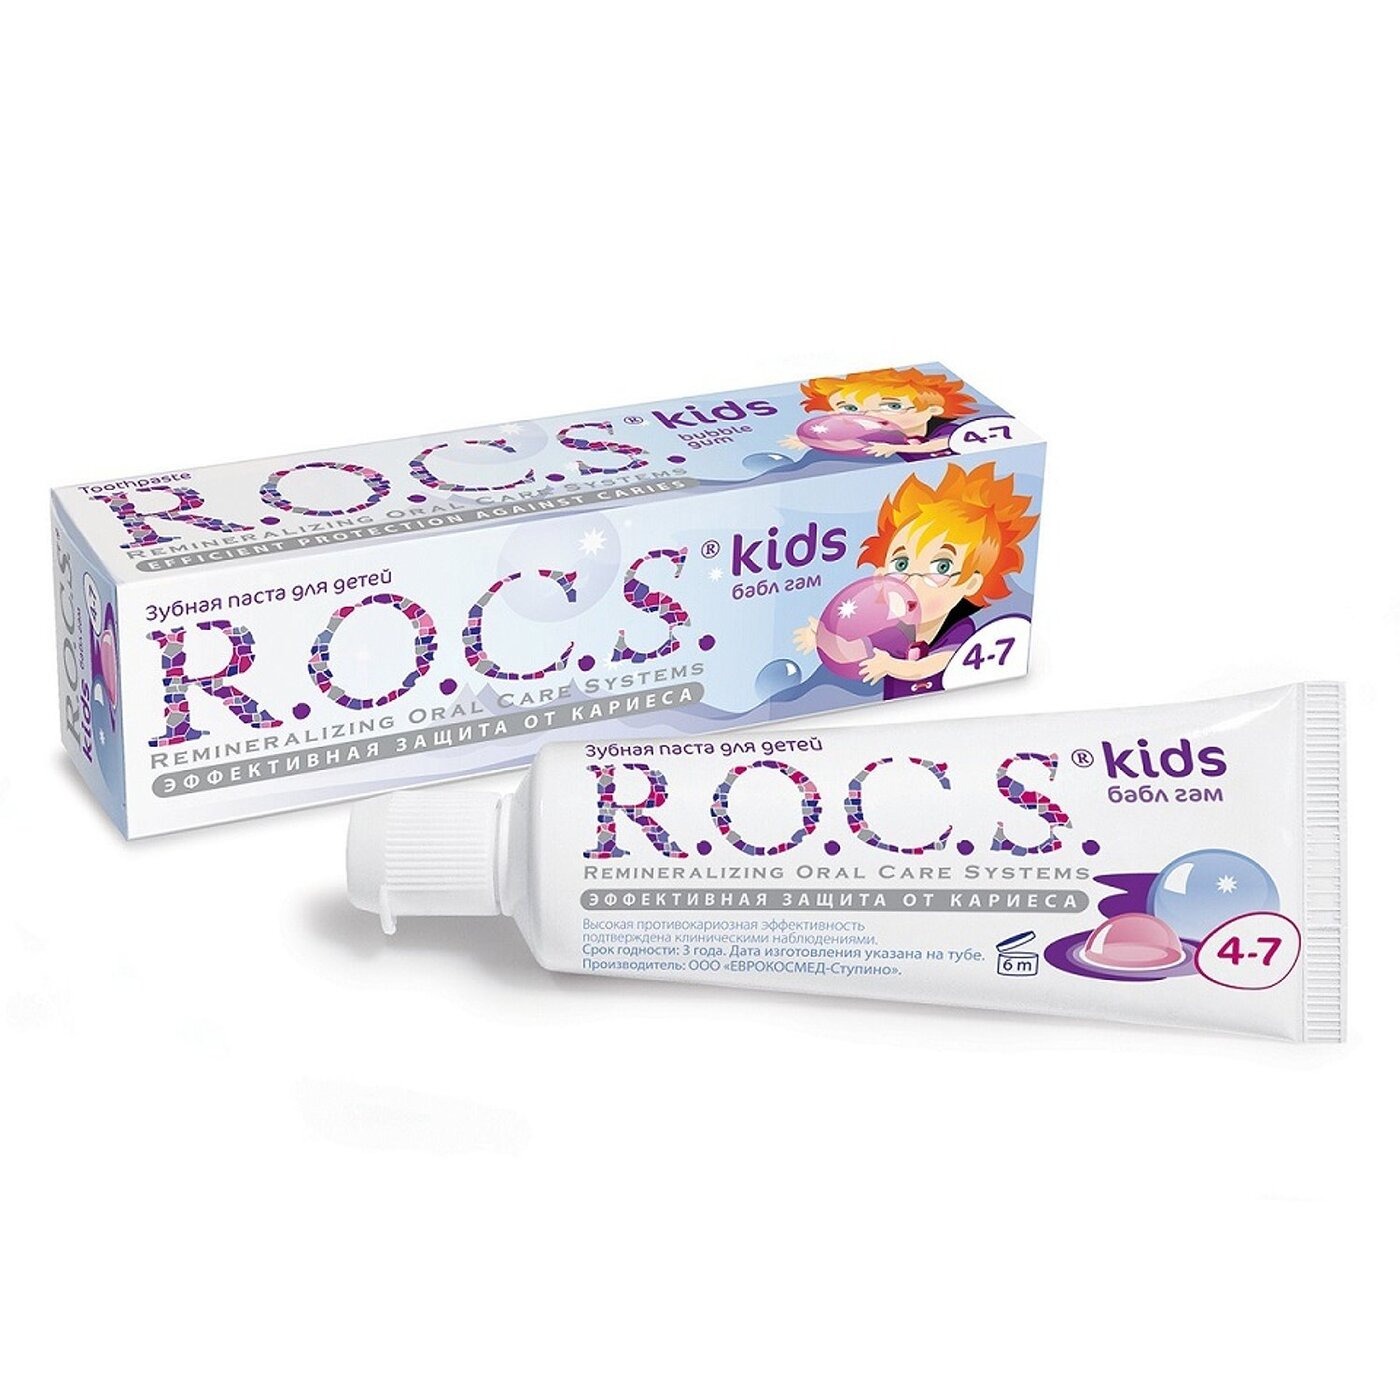 Зубная паста	 R.O.C.S. для детей бабл гам 45 гр